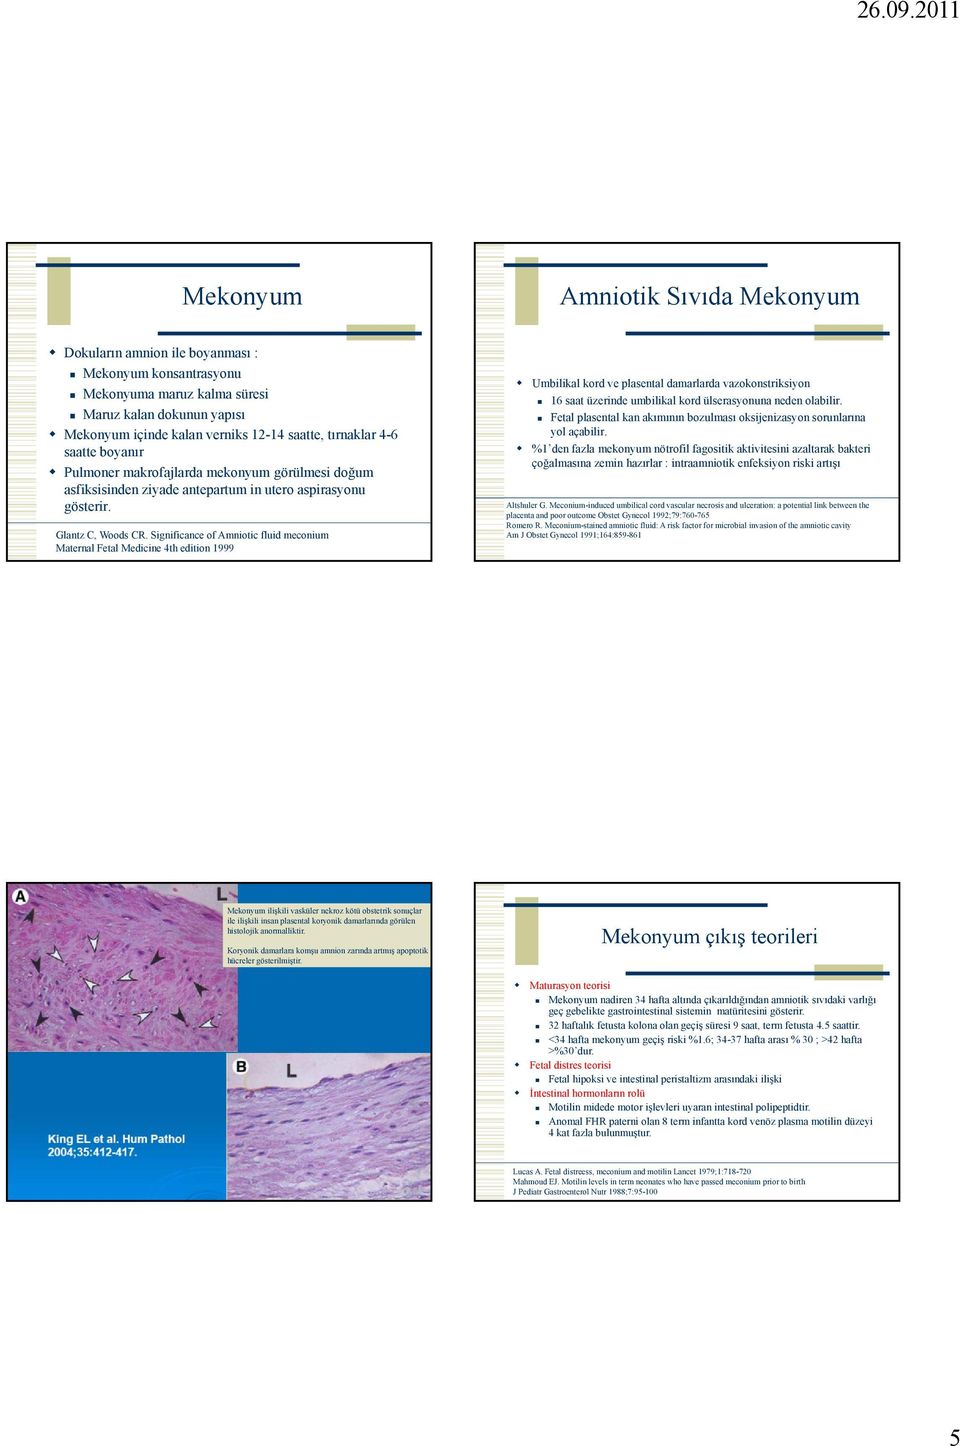 Significance of Amniotic fluid meconium Maternal Fetal Medicine 4th edition 1999 Umbilikal kord ve plasental damarlarda vazokonstriksiyon 16 saat üzerinde umbilikal kord ülserasyonuna neden olabilir.